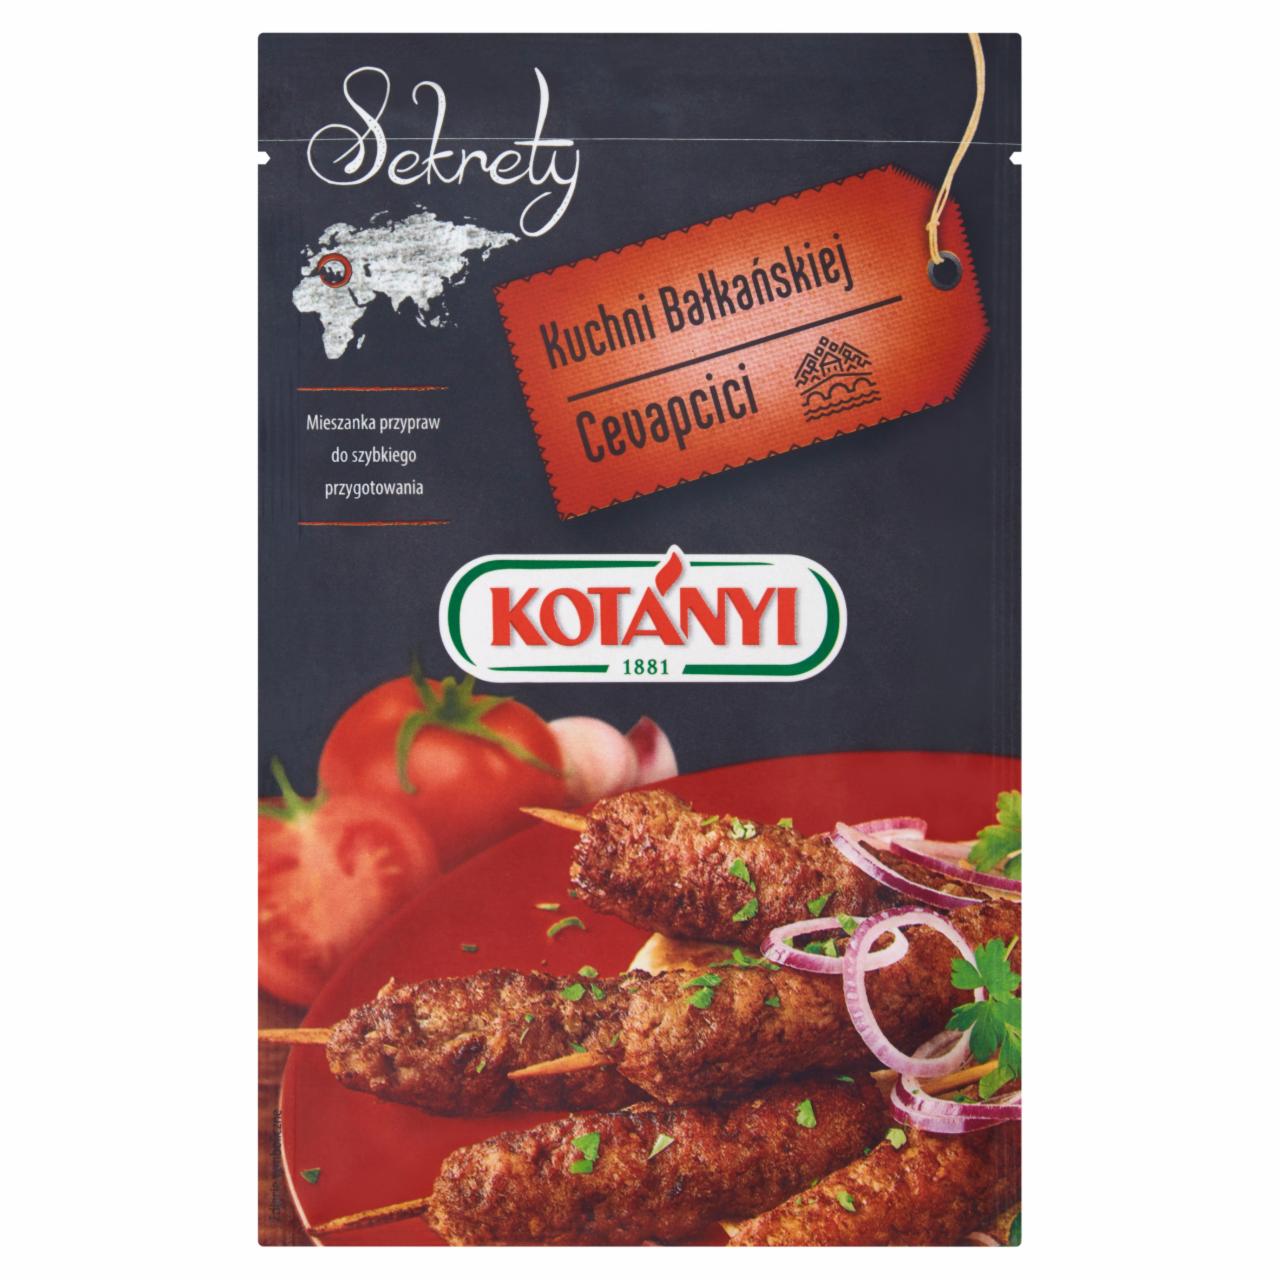 Zdjęcia - Kotányi Sekrety Kuchni Bałkańskiej Cevapcici Mieszanka przypraw 25 g